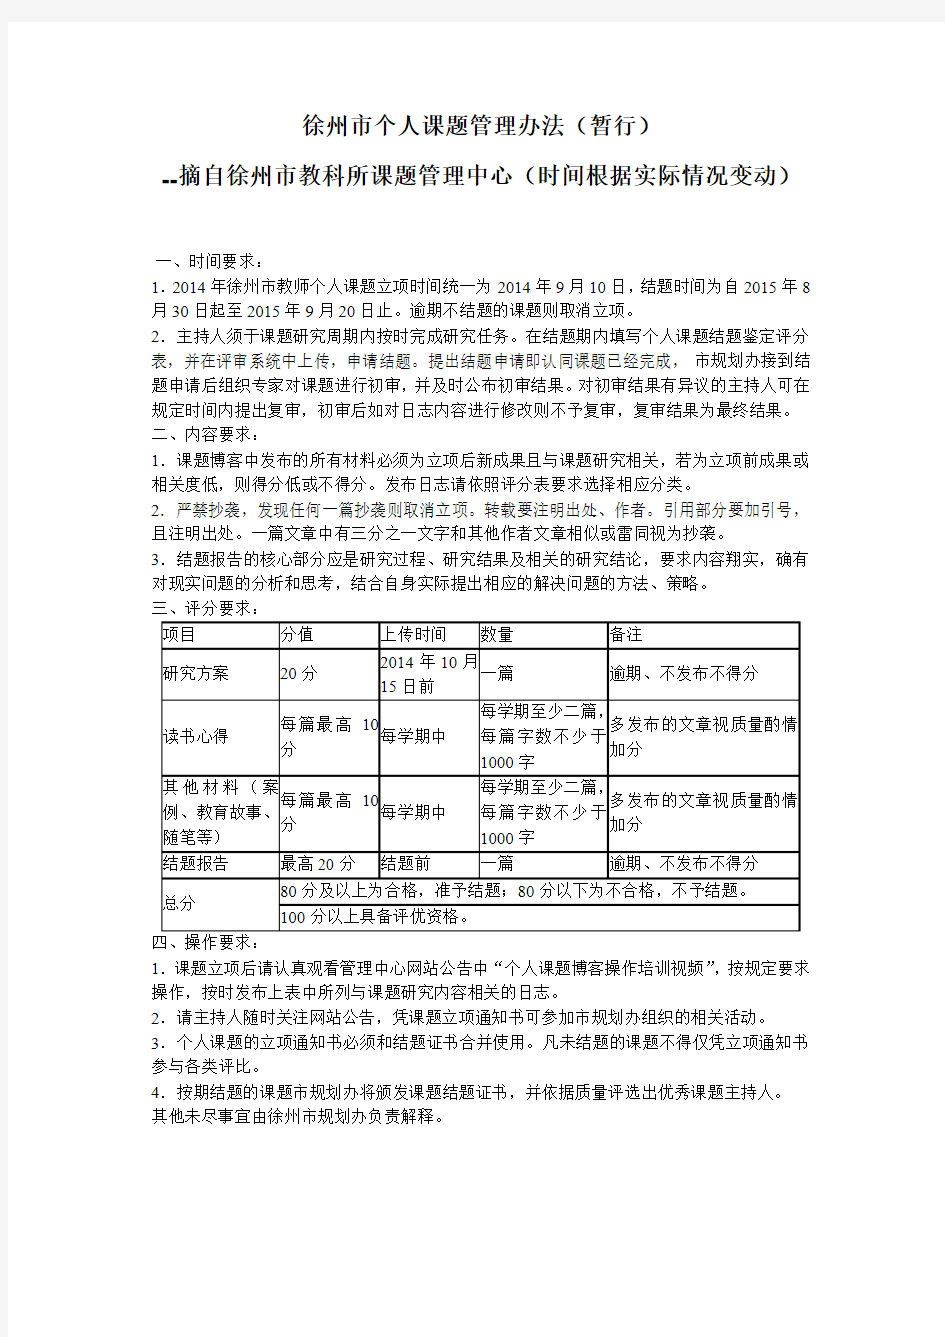 徐州市个人课题管理办法(暂行)